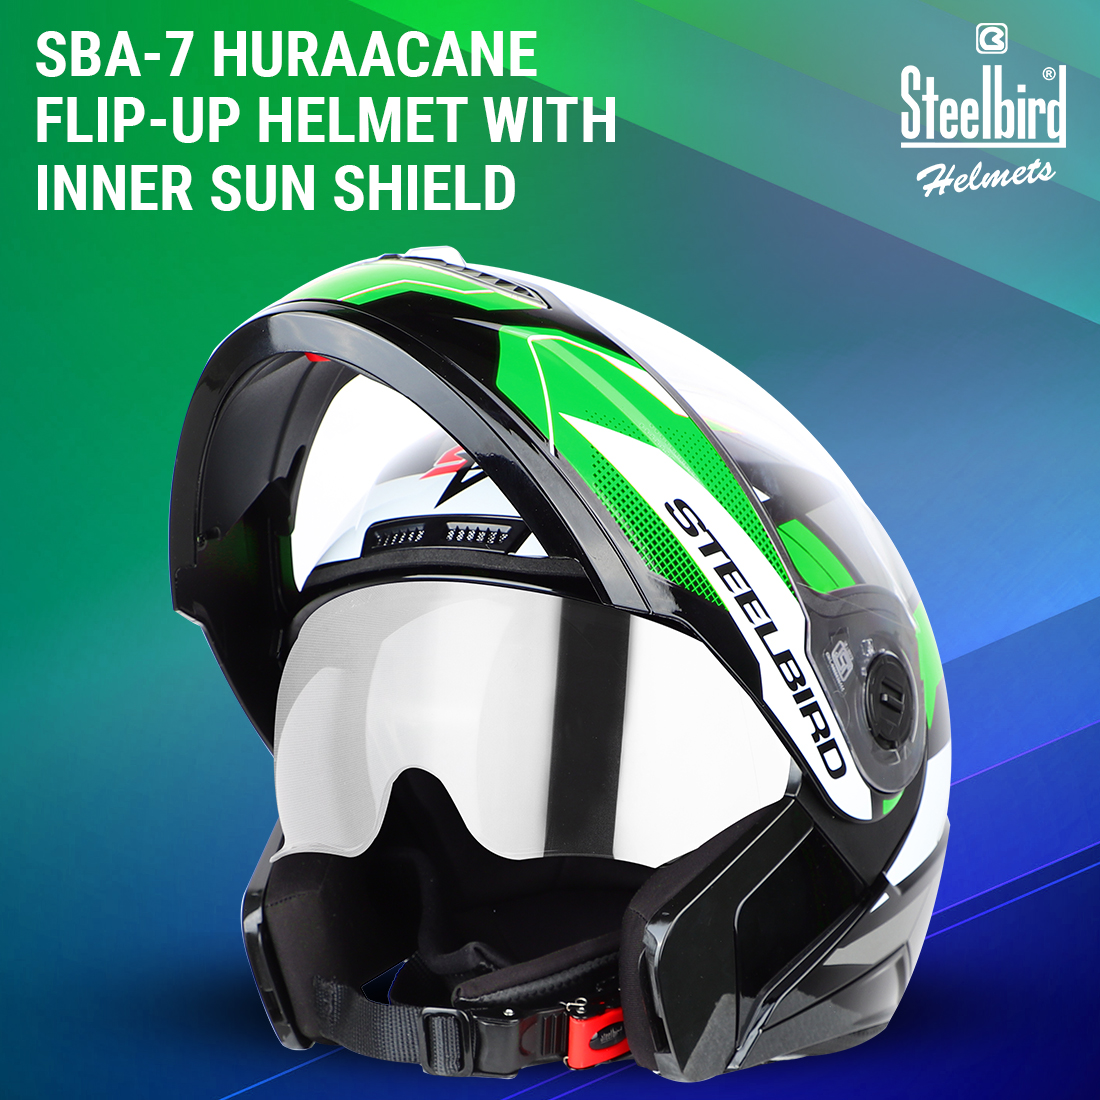 Steelbird SBA-7 Huracan ISI Certified Flip-Up Helmet For Men And Women With Inner Sun Shield (Matt Black Green)